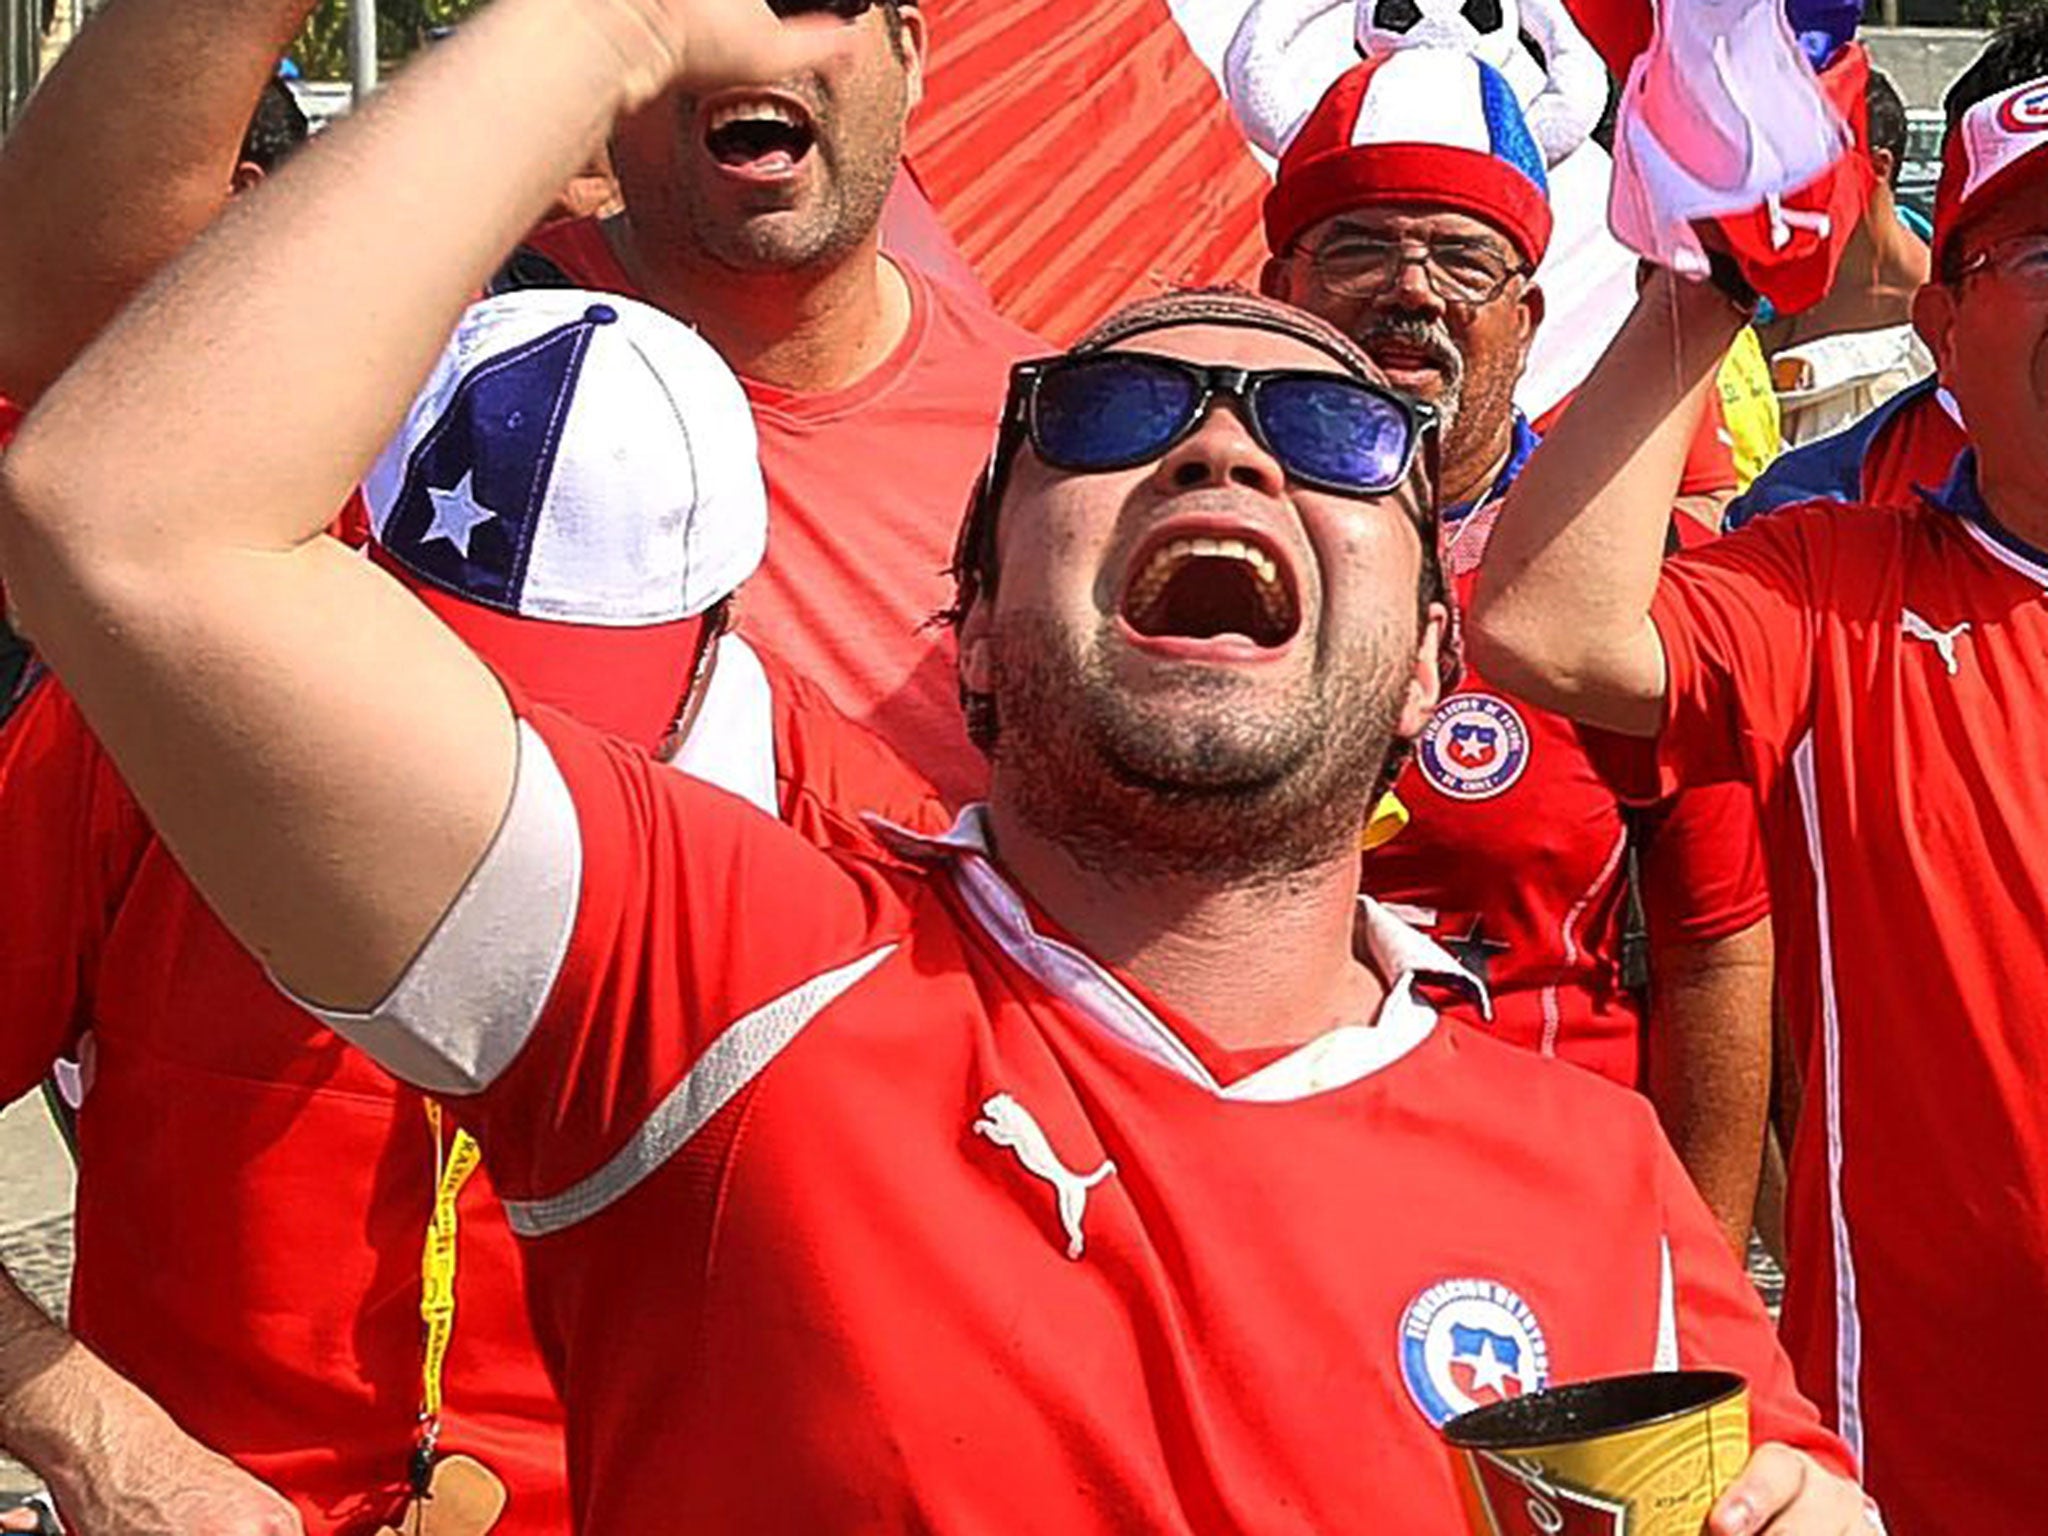 A Chile fan